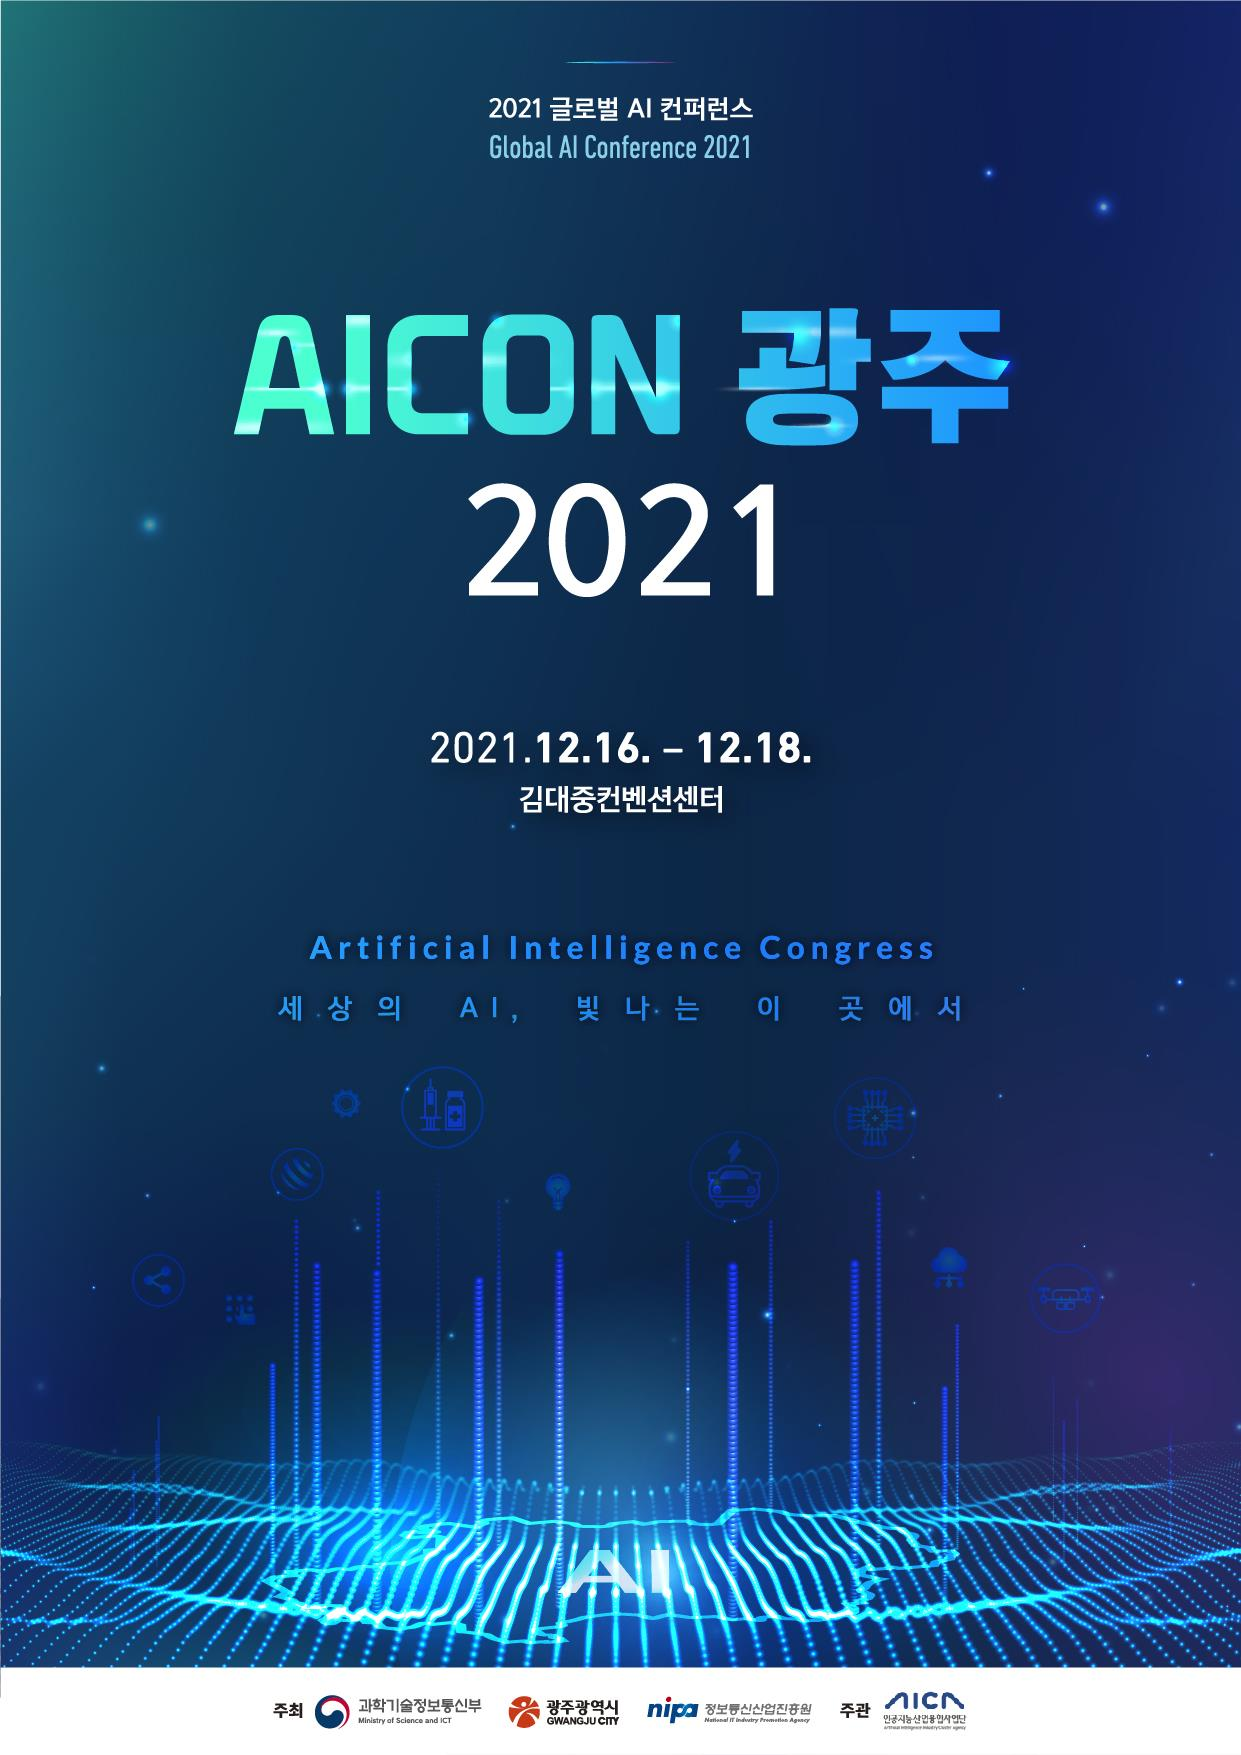 세계적인 인공지능 (AI) 전문가들을 한자리에서 만날 수 있는 글로벌 AI 컨퍼런스 ‘AICON 광주 2021’가 12월 16일부터 18일까지 사흘간 광주광역시 김대중컨벤션센터에서 열린다. (사진=인공지능산업융합사업단 제공).